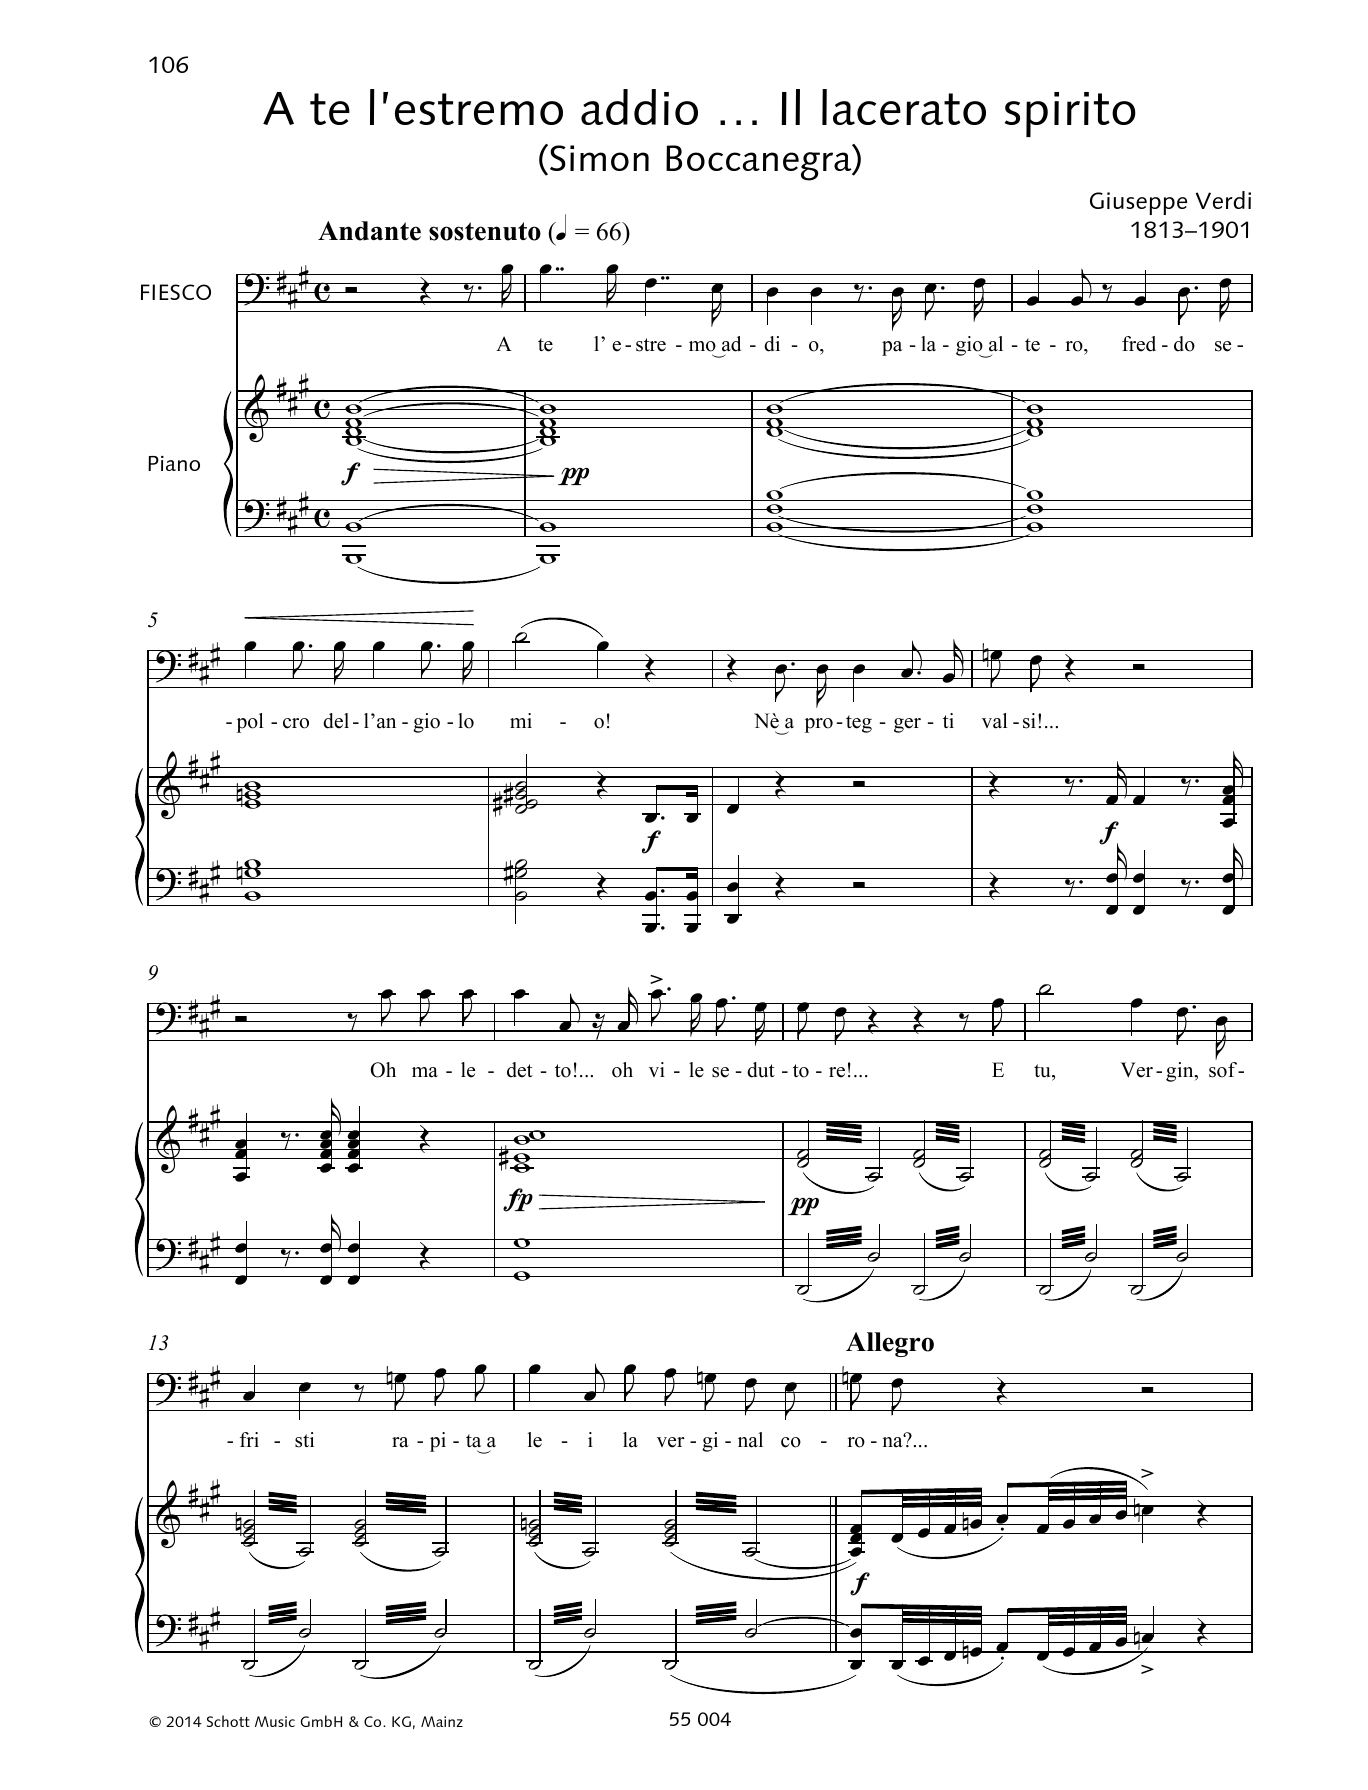 Download Giuseppe Verdi A te l'estremo addio... Il lacerato spirito Sheet Music and learn how to play Piano & Vocal PDF digital score in minutes